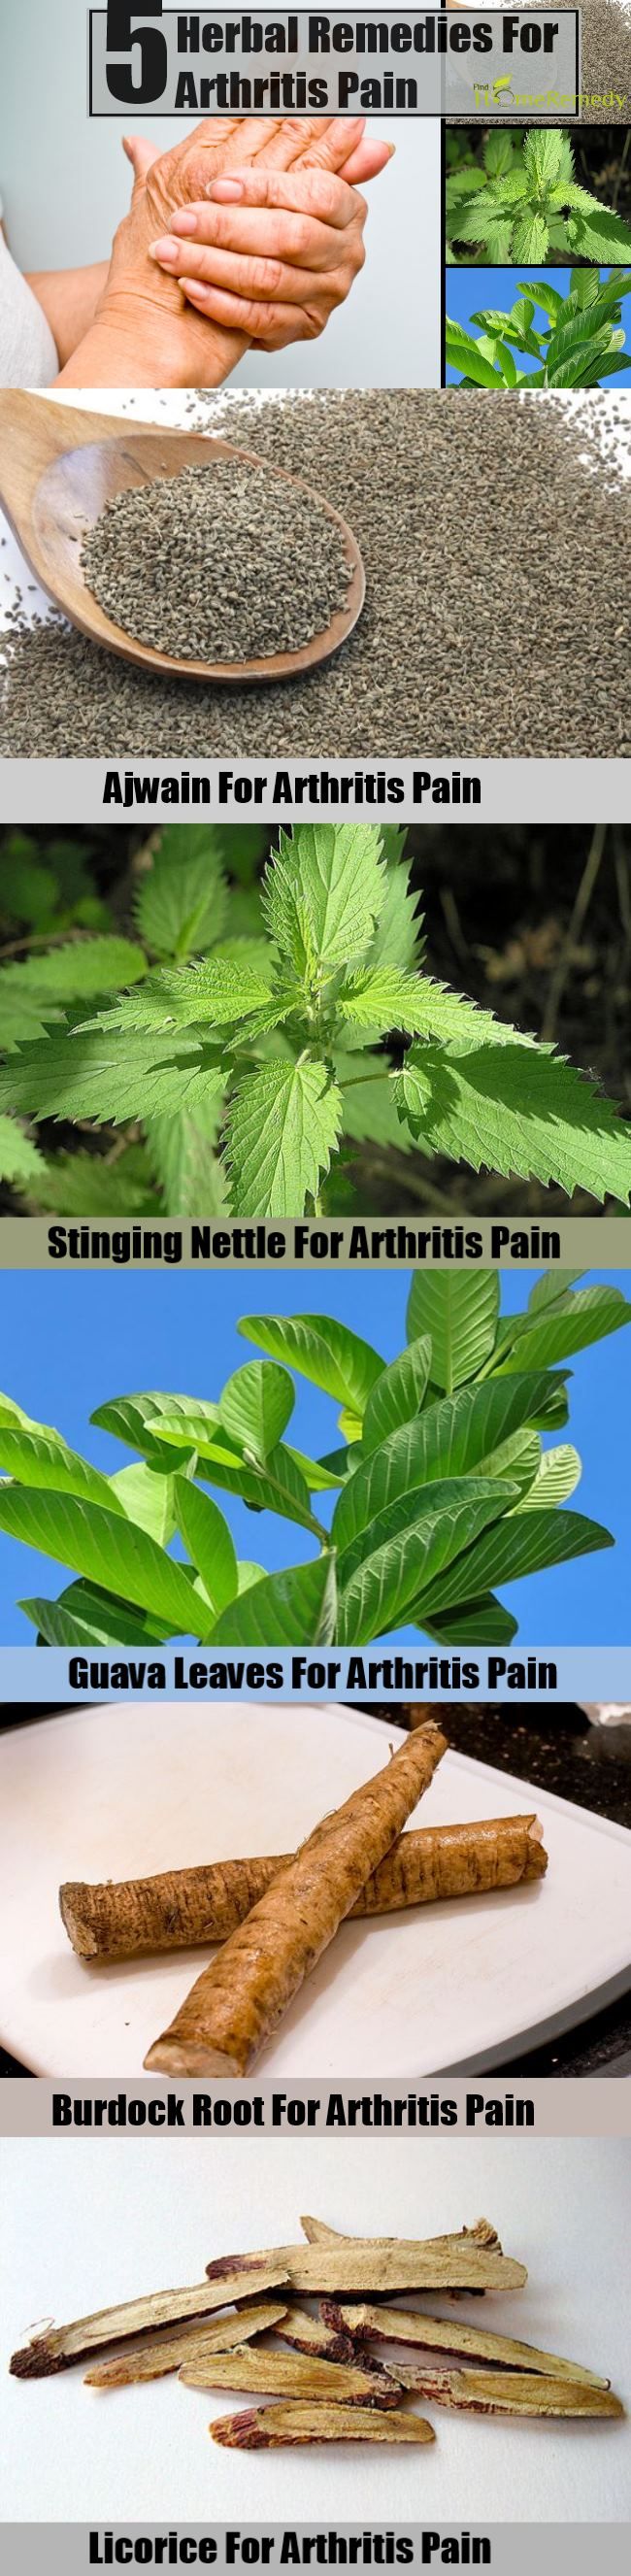 5 Remèdes naturels pour la douleur arthritique